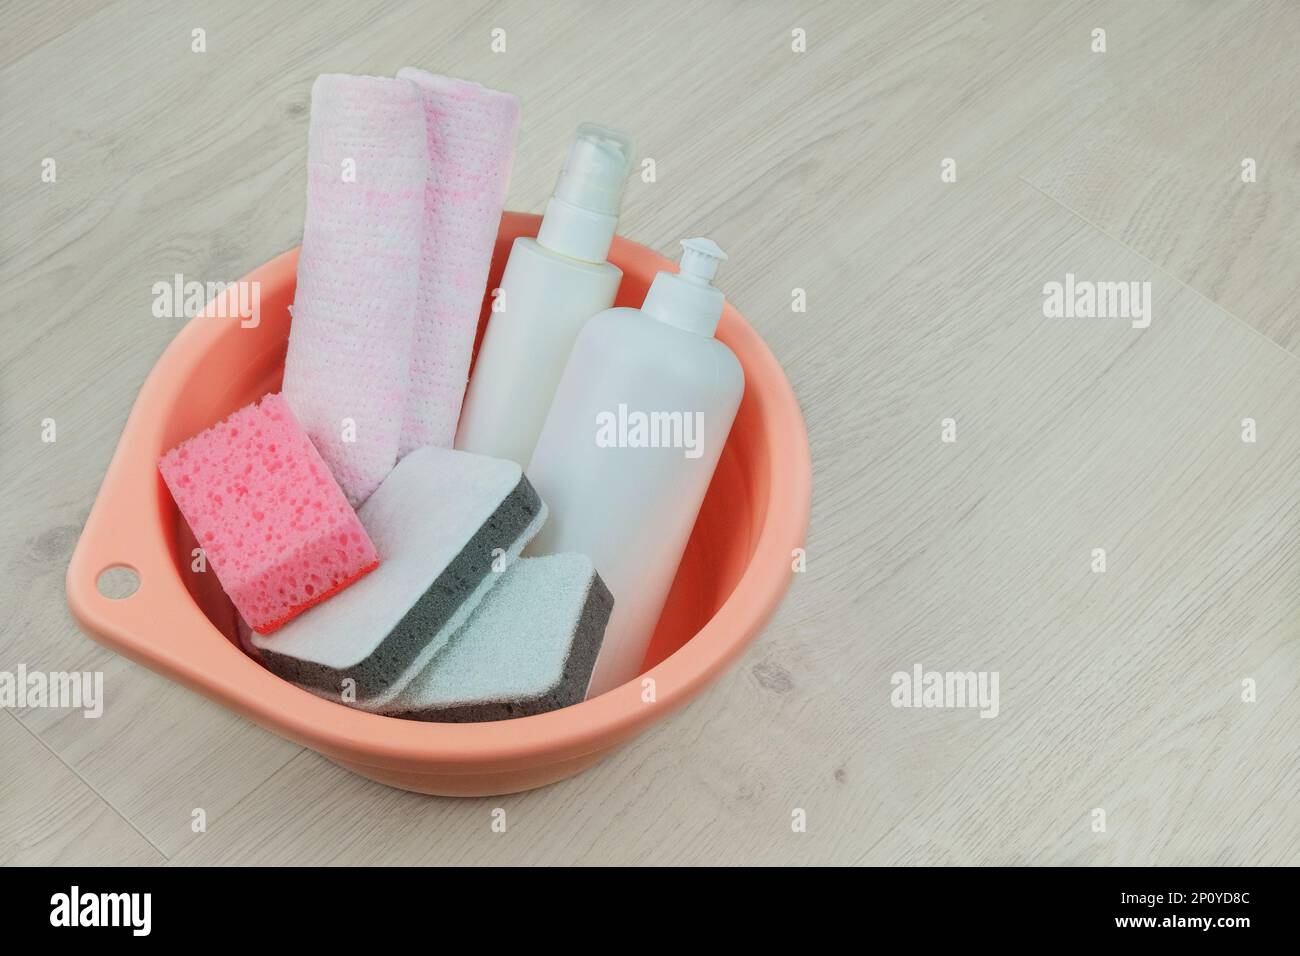 Concetto di pulizia. Bottiglie di detersivo con panni per la pulizia in un lavabo rosa su fondo in legno. Spazio di copia. Foto Stock